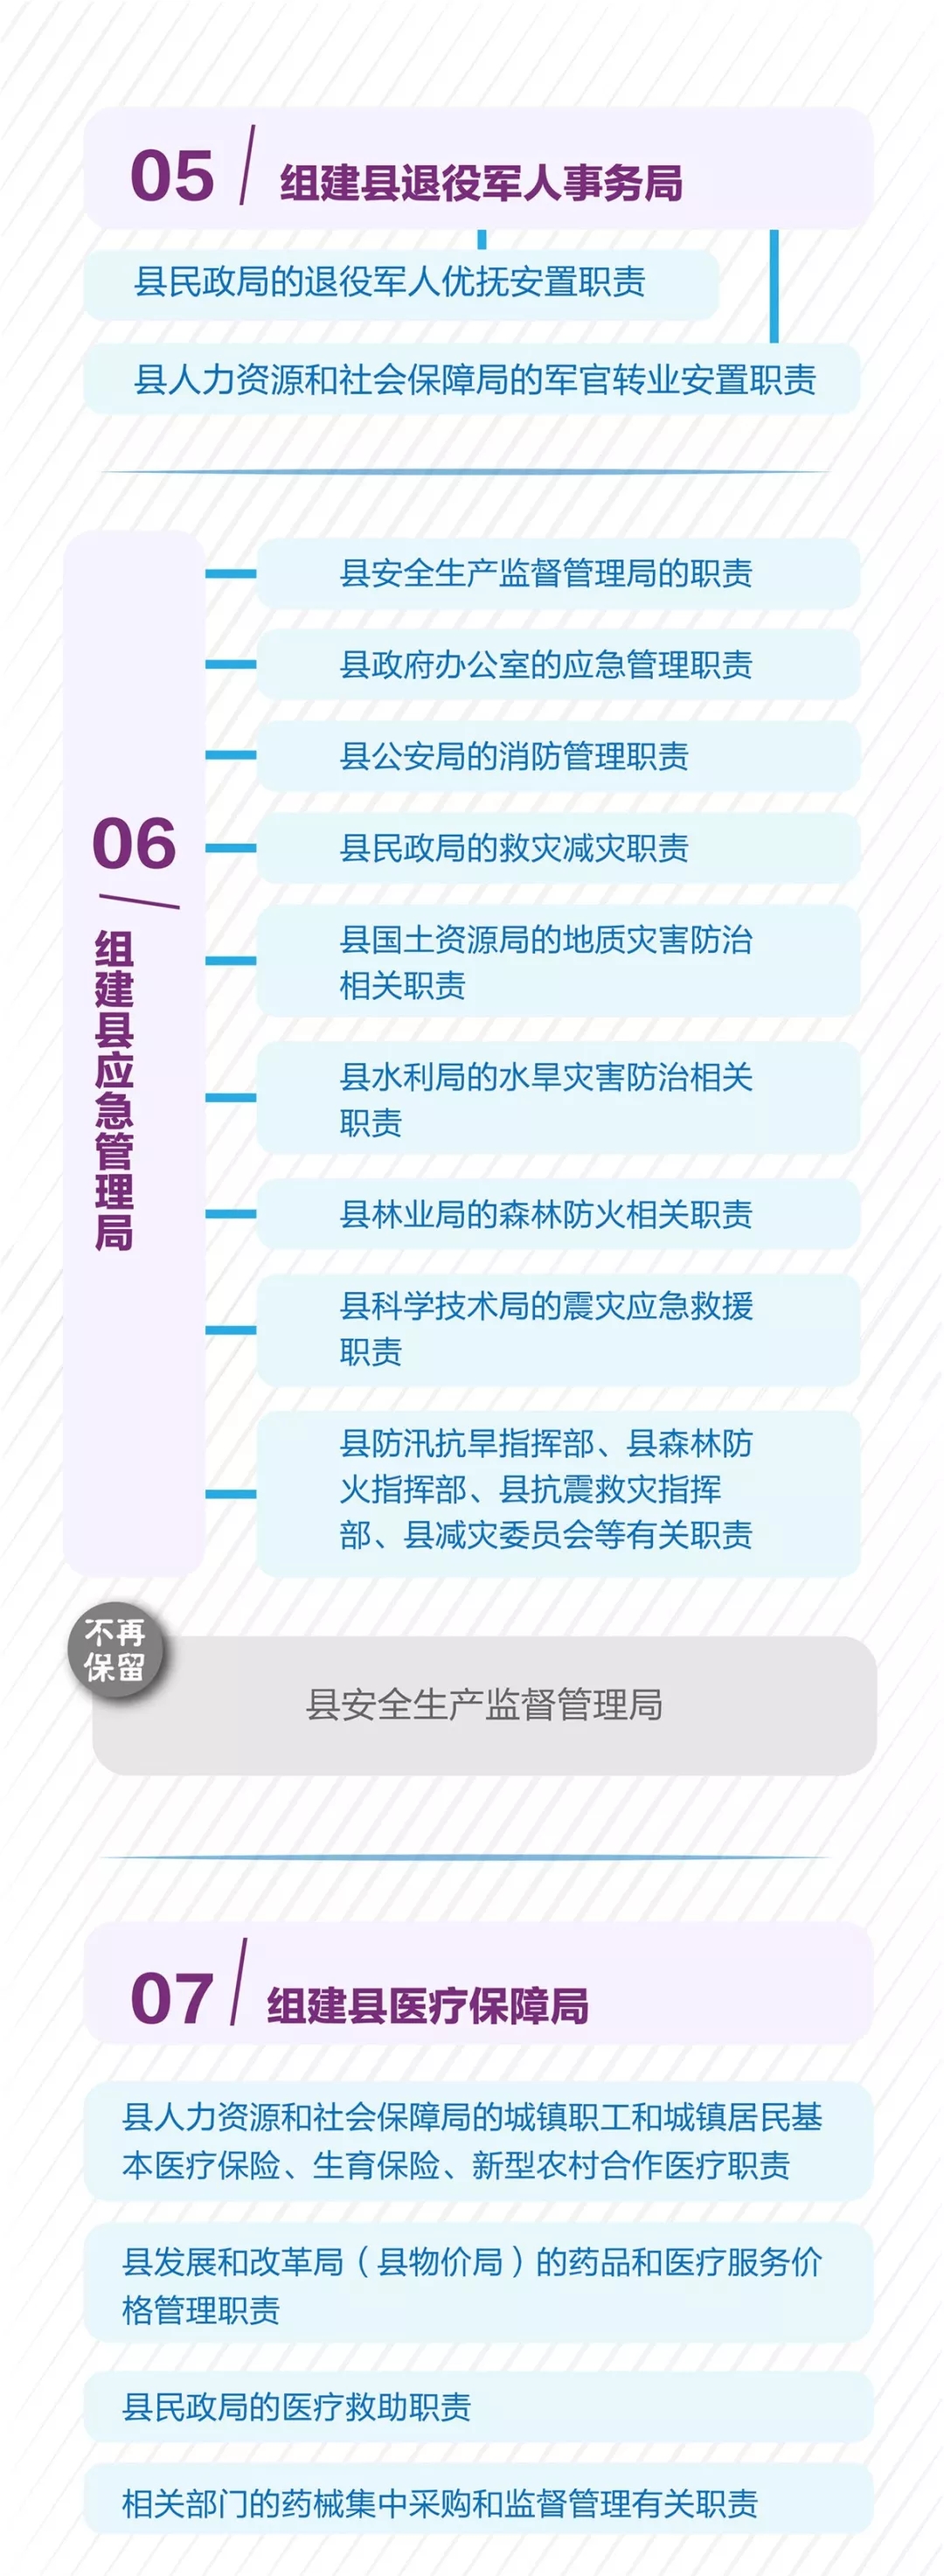 平阳县机构改革正式实施 带你一图读懂